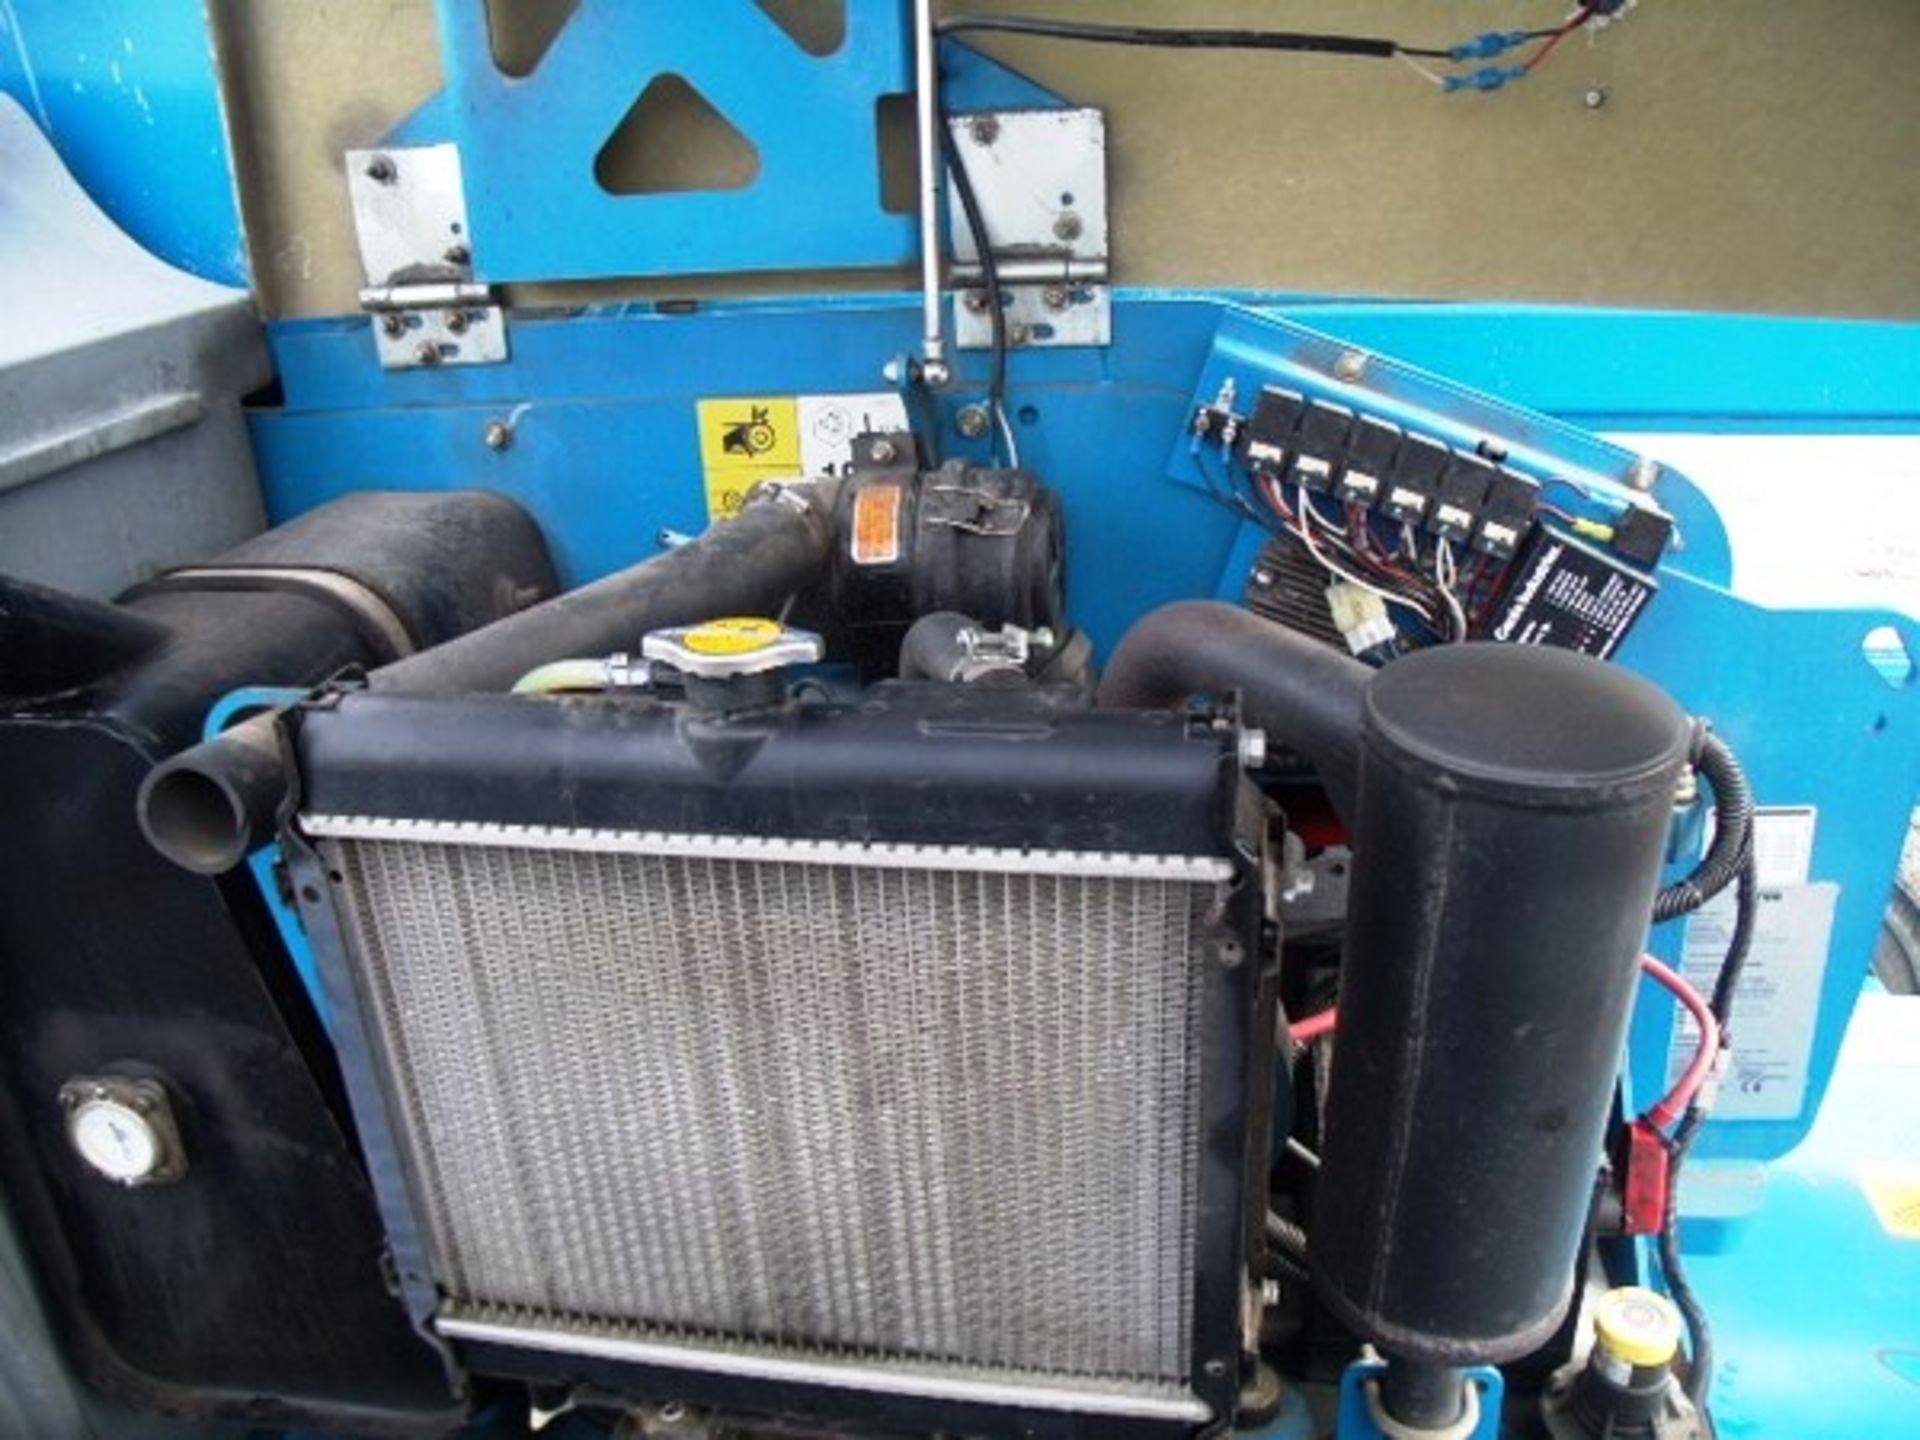 2012 GENIE Z45/25J Bi-Fuel, s/n - 45278, 405hrs (verified), Kubota engine. - Image 8 of 13